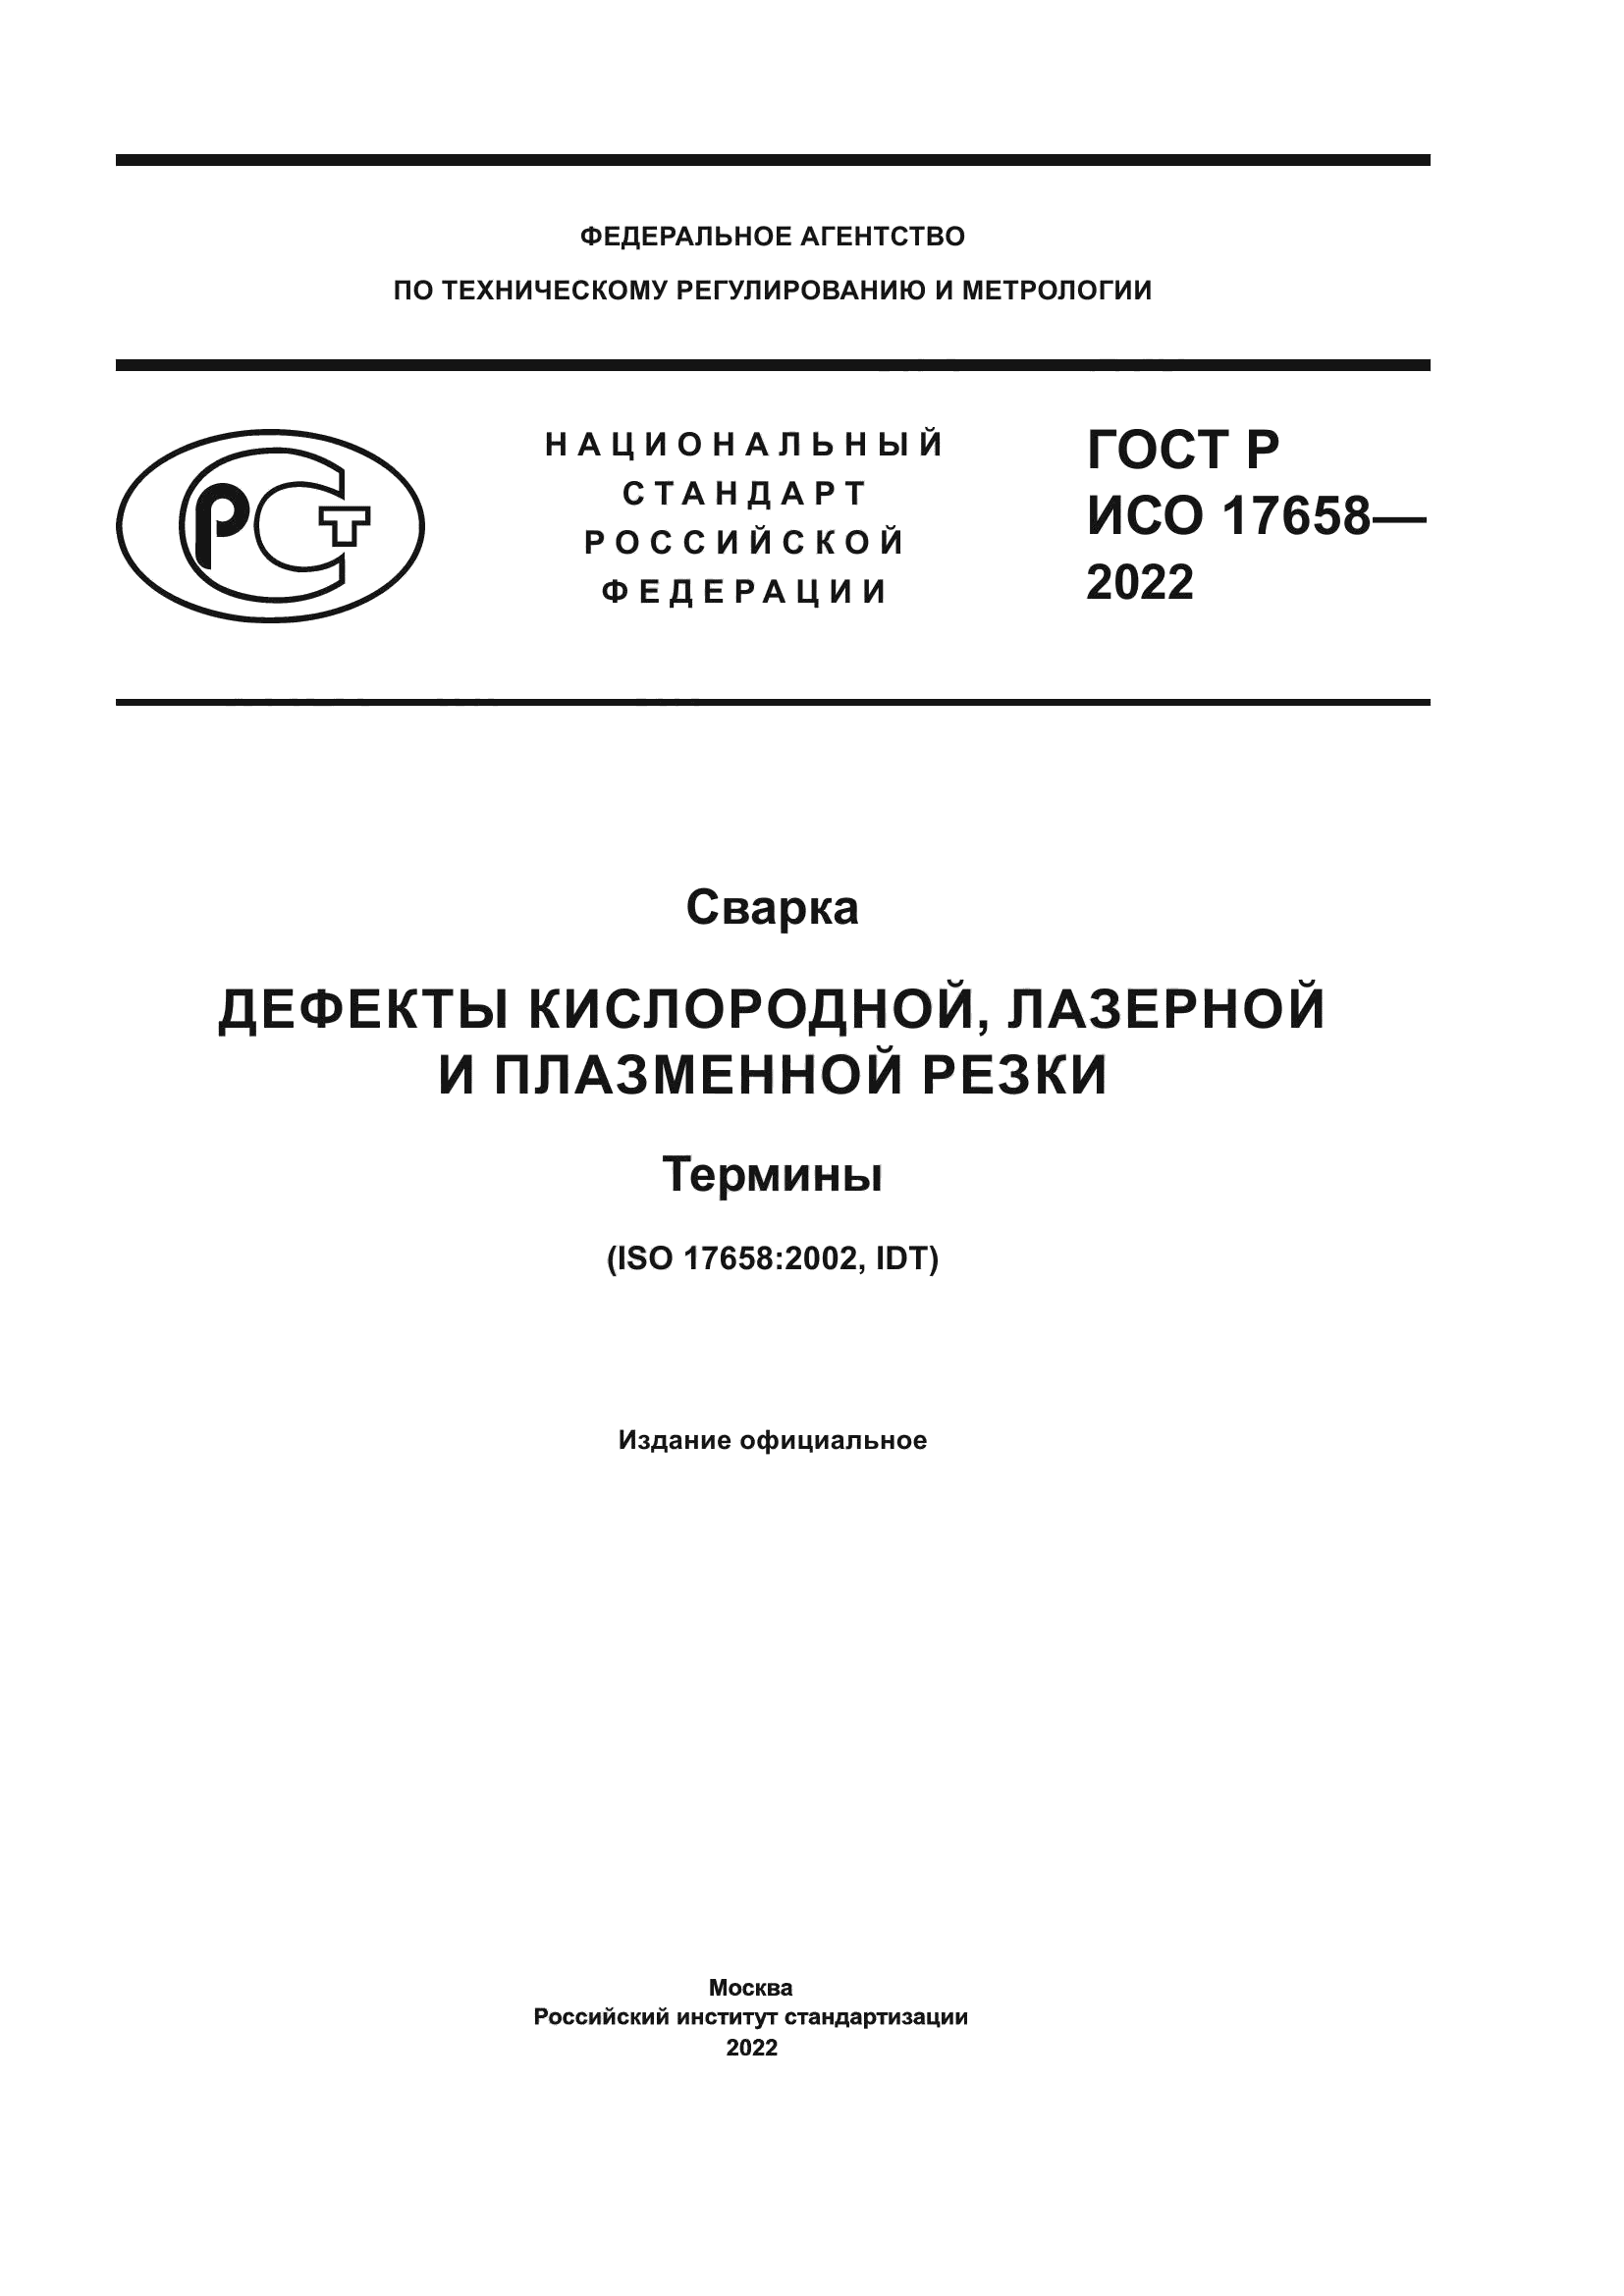 ГОСТ Р ИСО 17658-2022